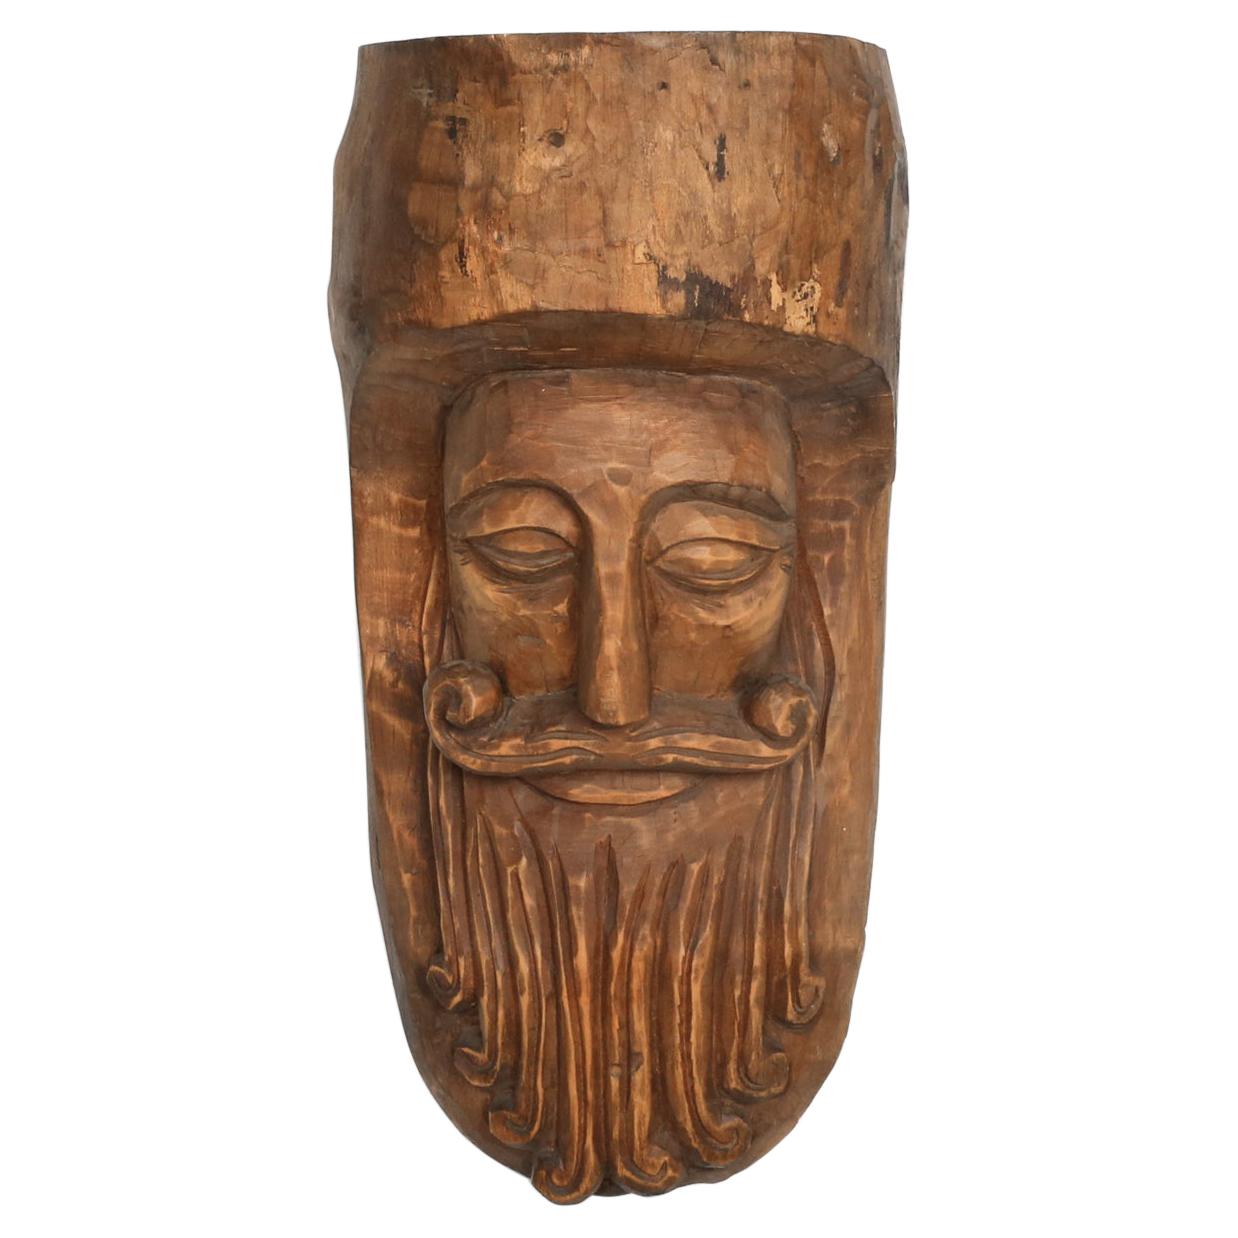 Masque rustique en bois sculpté à la main avec une expression douce